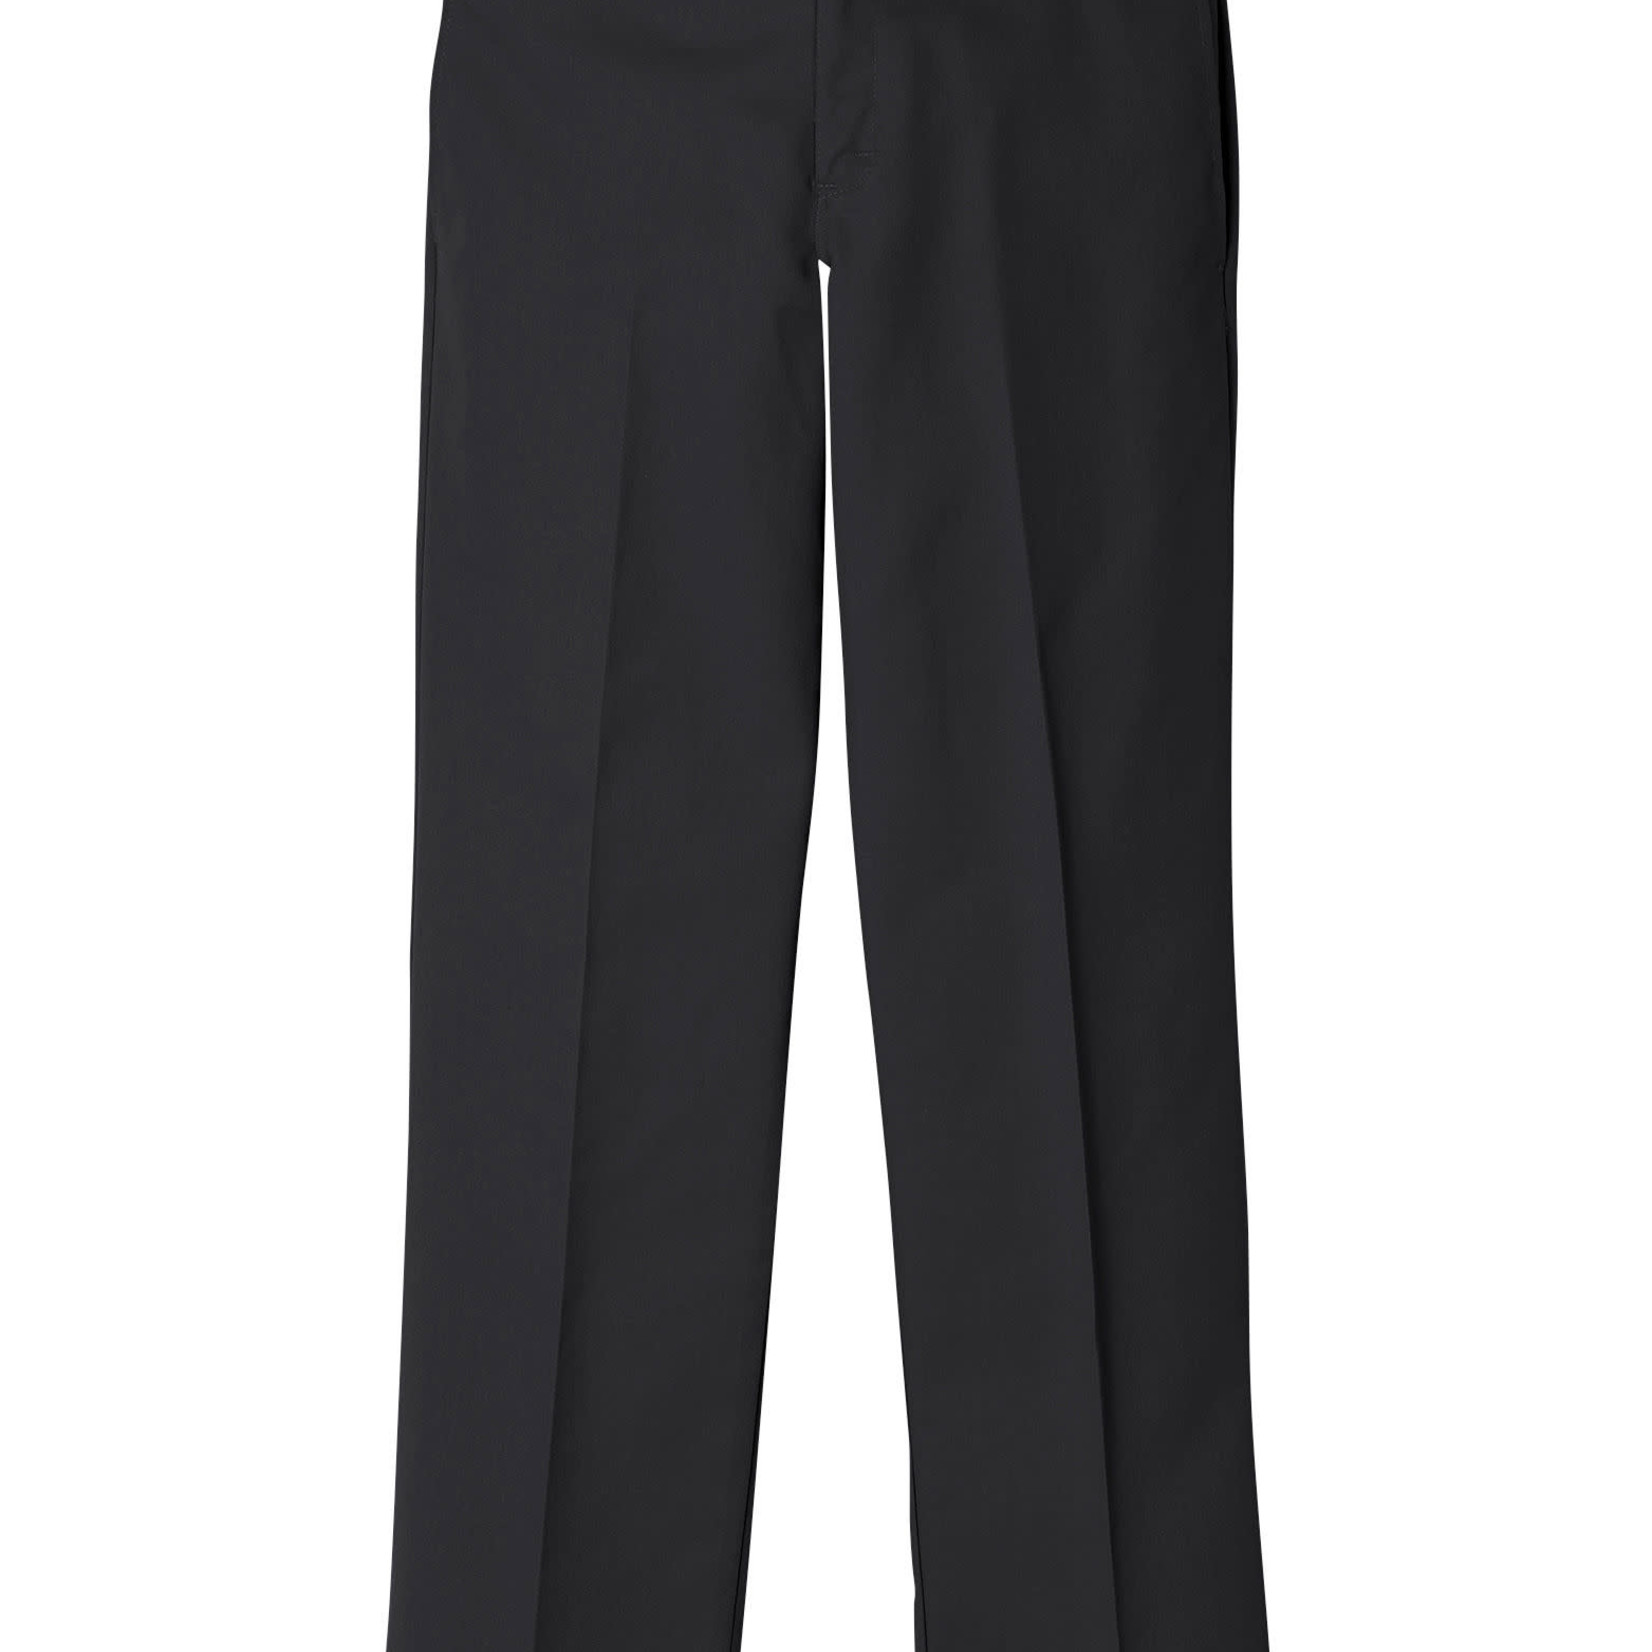 Khaki casual trousers for men and women - DIckies - Pavidas